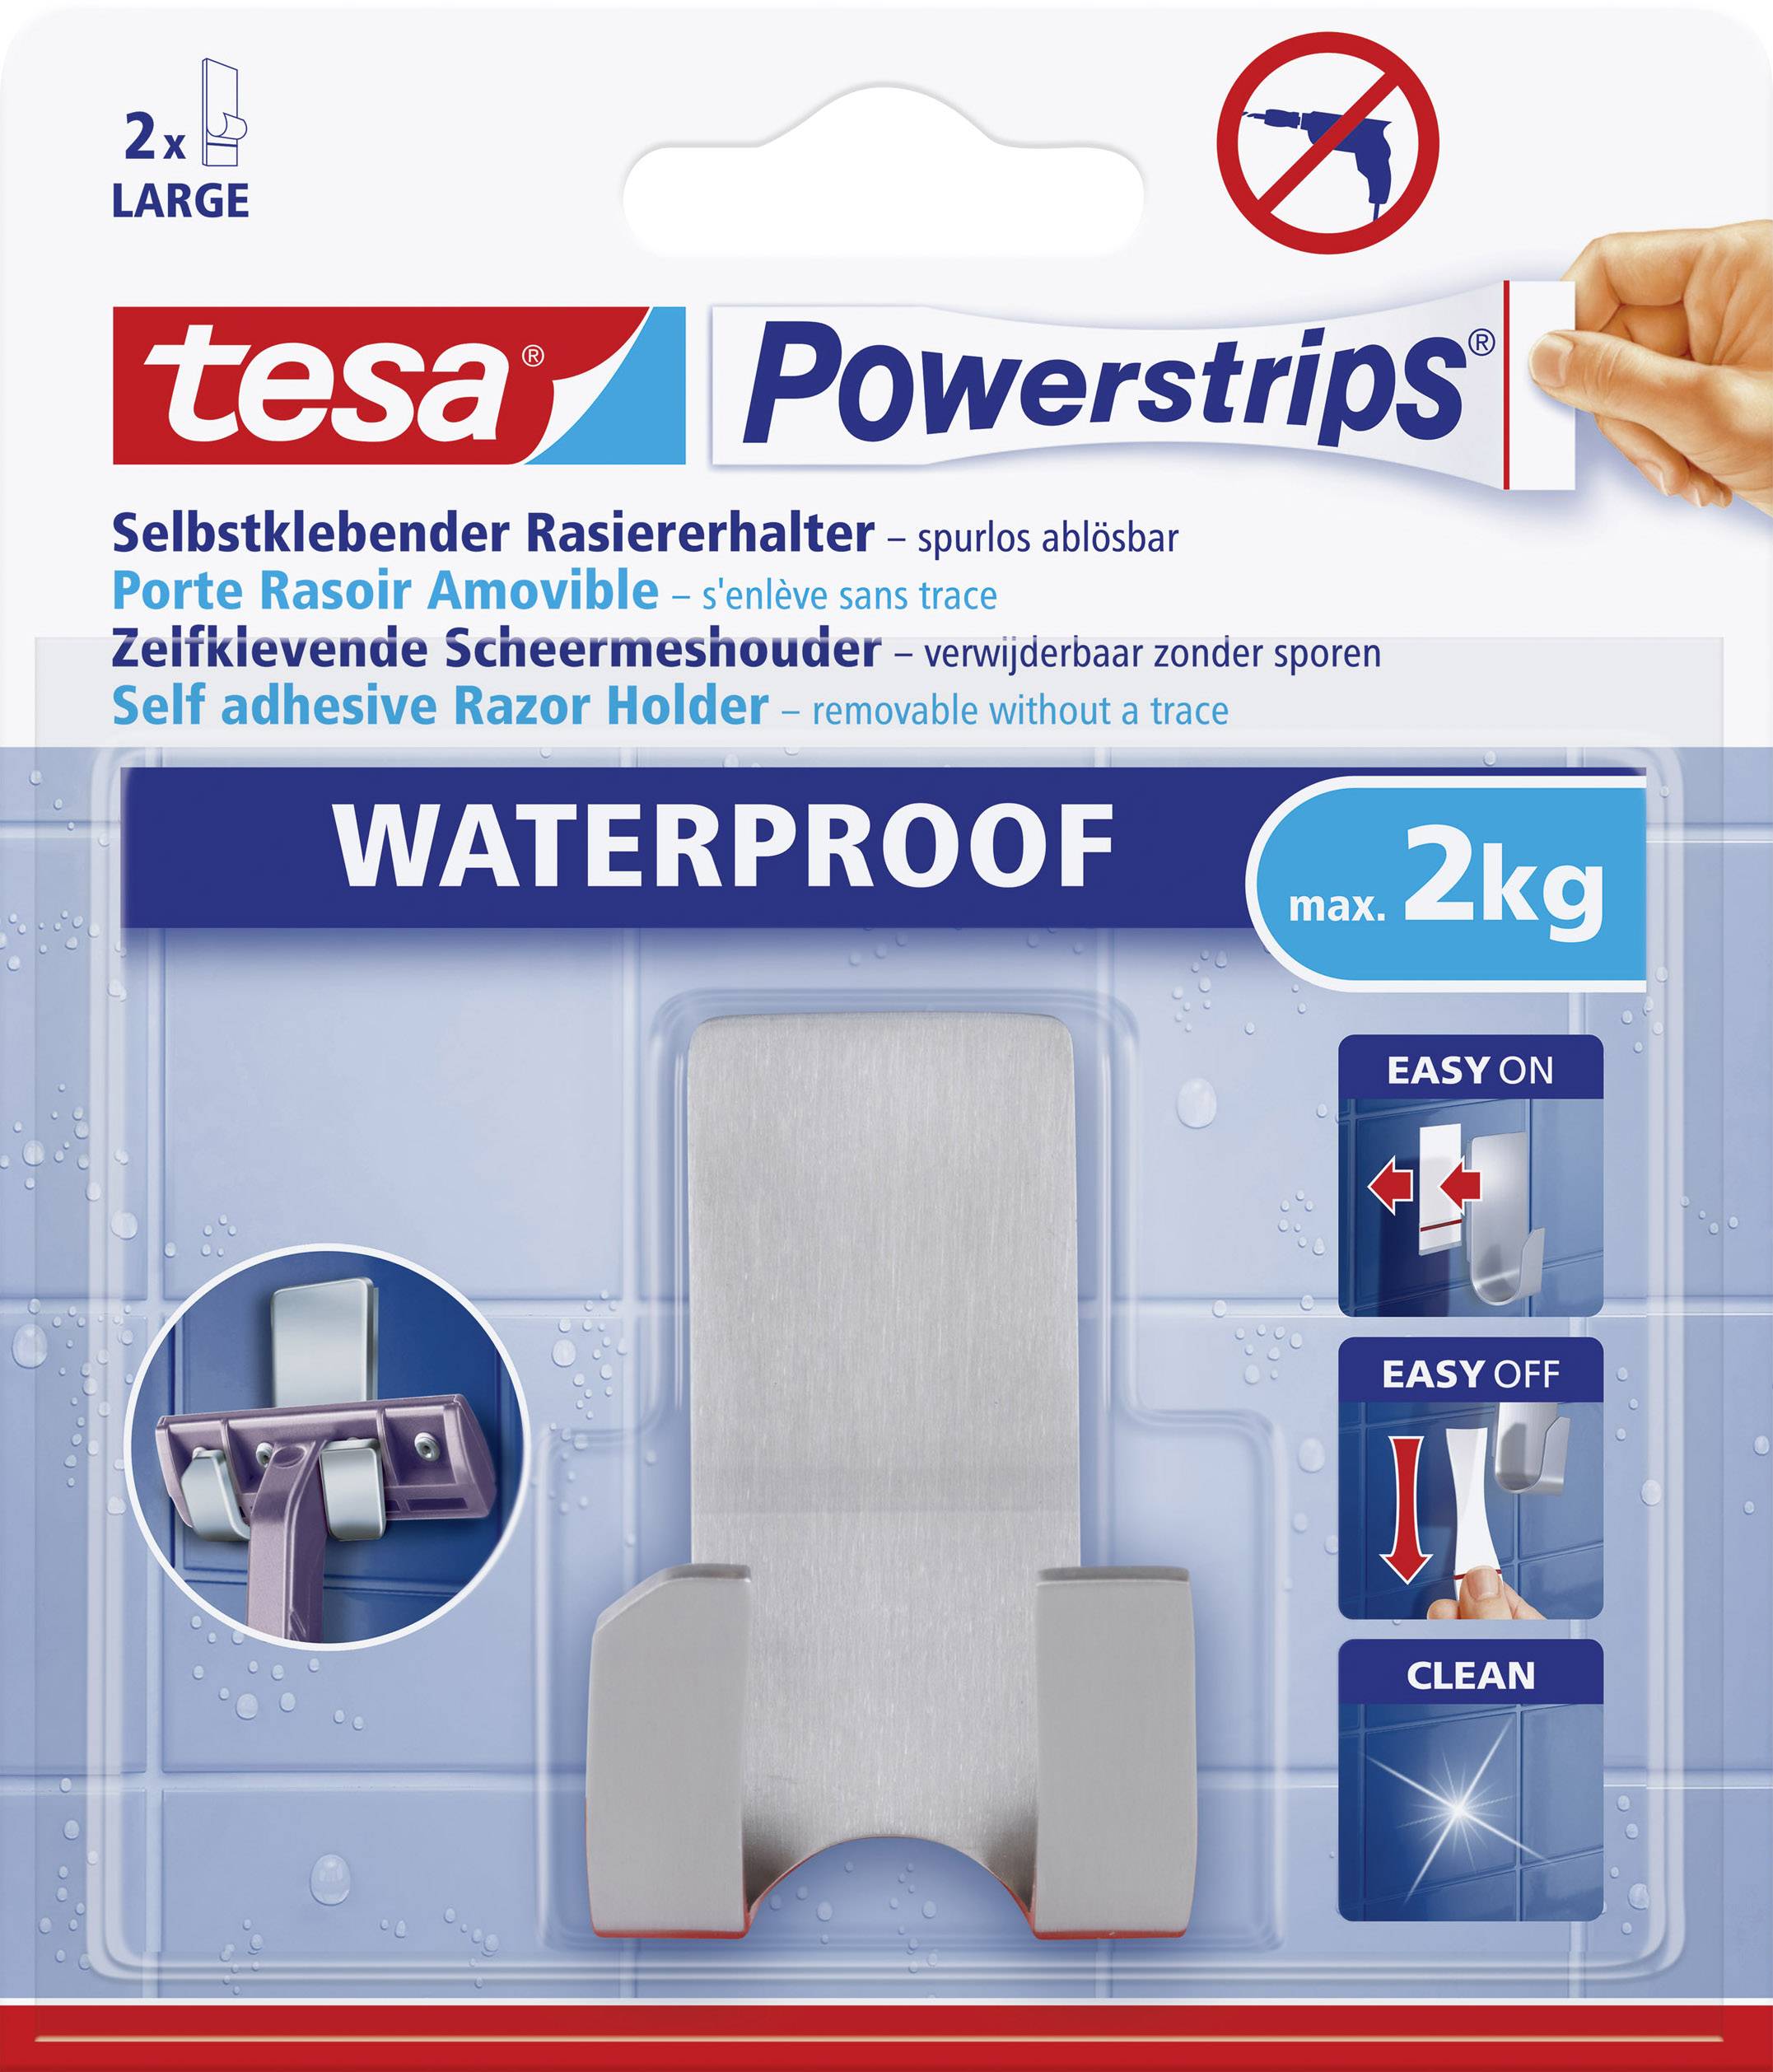 1 St. tesa 59709 tesa Powerstrips® Waterproof Rasiererhalter Metall Inhalt 